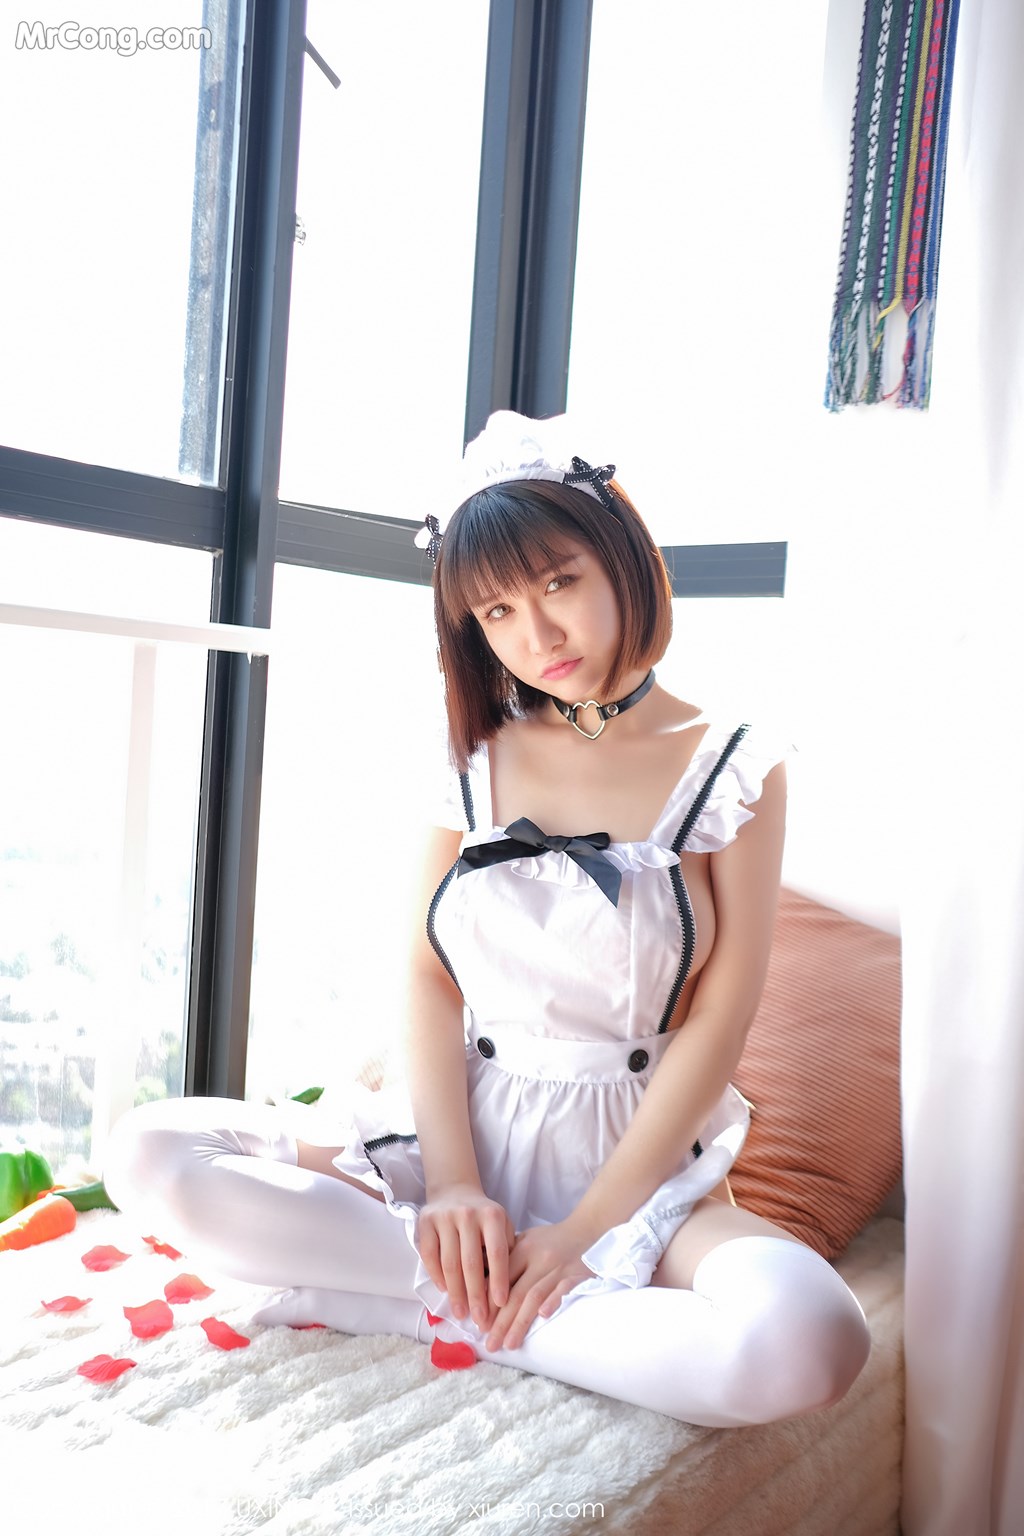 UXING Vol.058: Model Aojiao Meng Meng (K8 傲 娇 萌萌 Vivian) (35 photos) photo 1-3